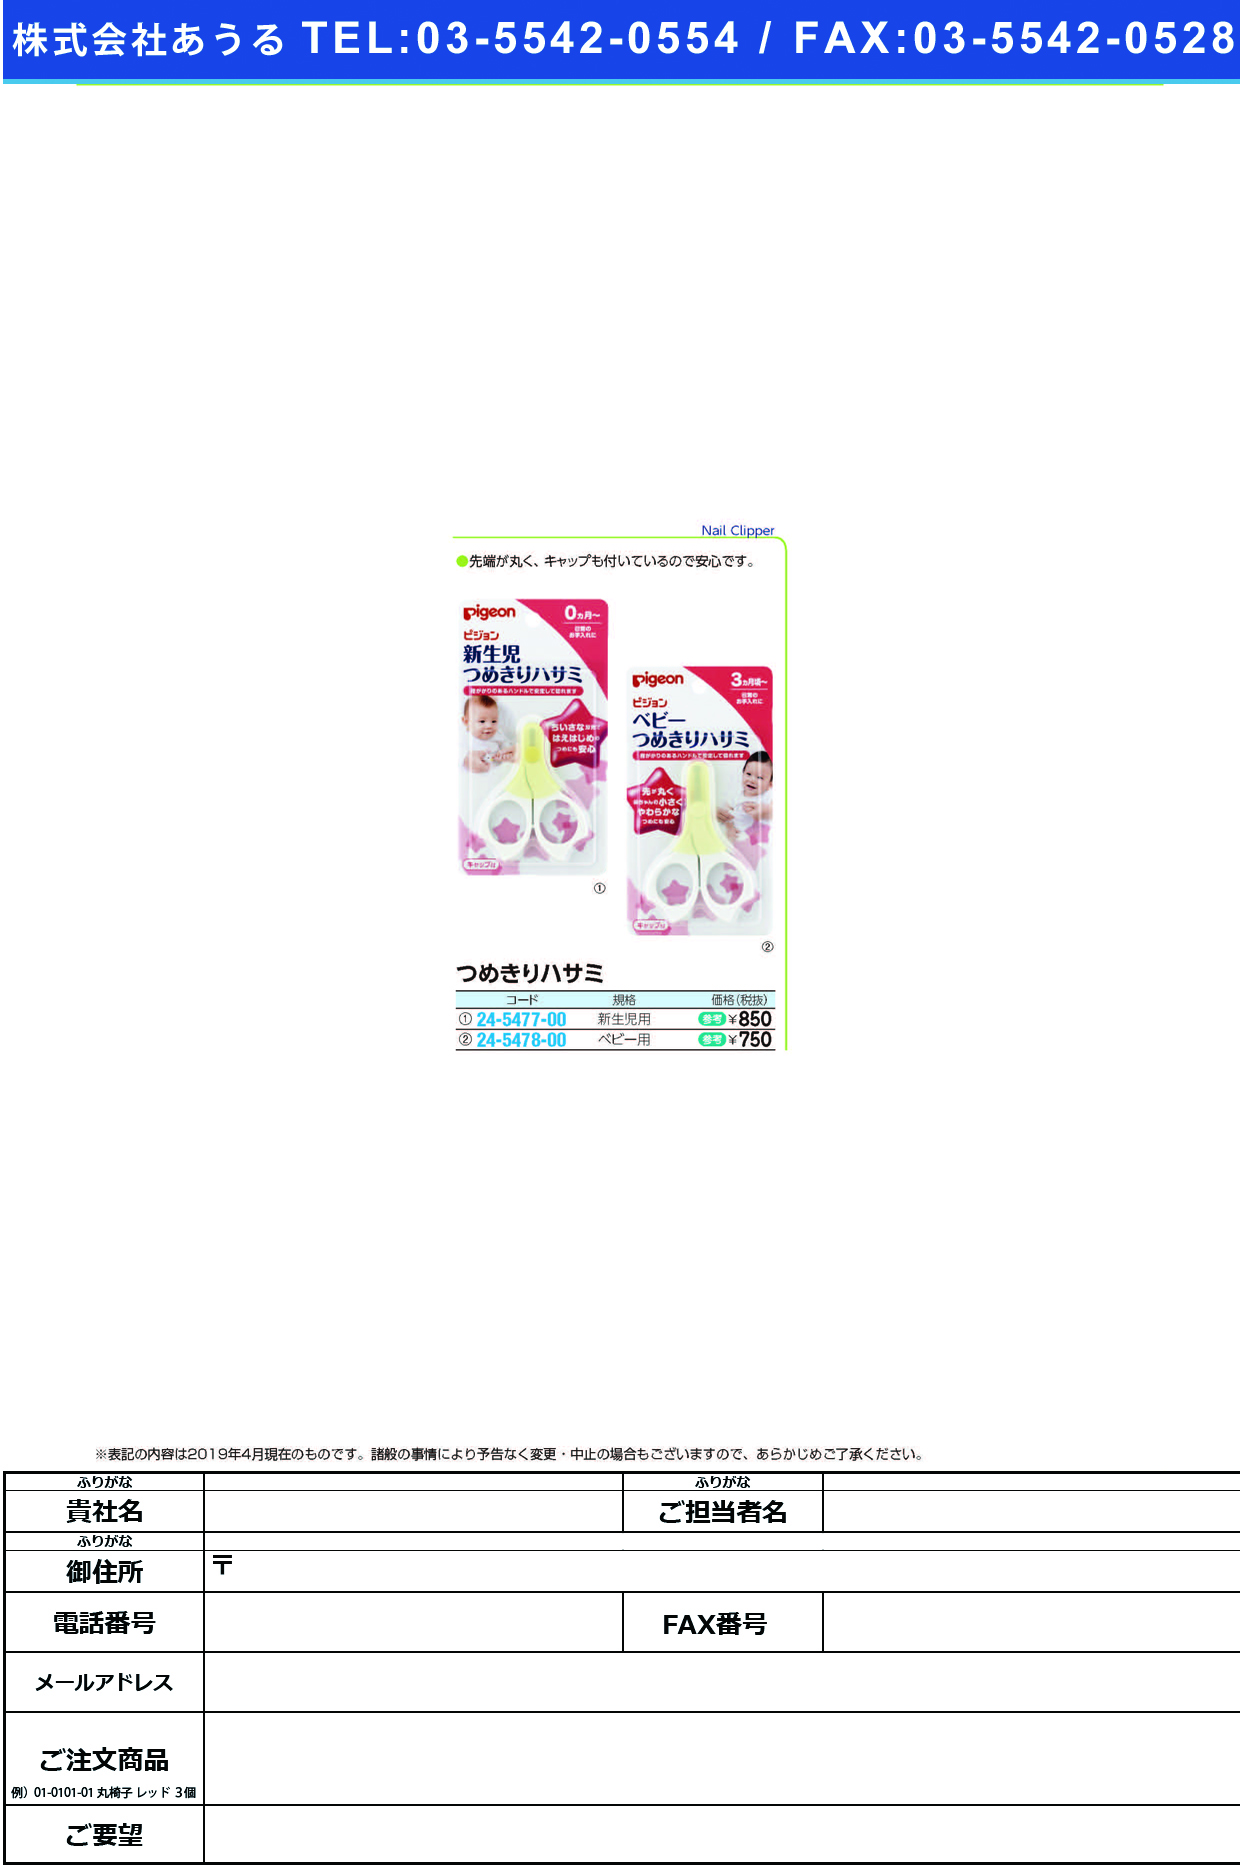 (24-5477-00)新生児用つめきりハサミ 15105 ｼﾝｾｲｼﾞﾖｳﾂﾒｷﾘ(ピジョン)【1個単位】【2019年カタログ商品】